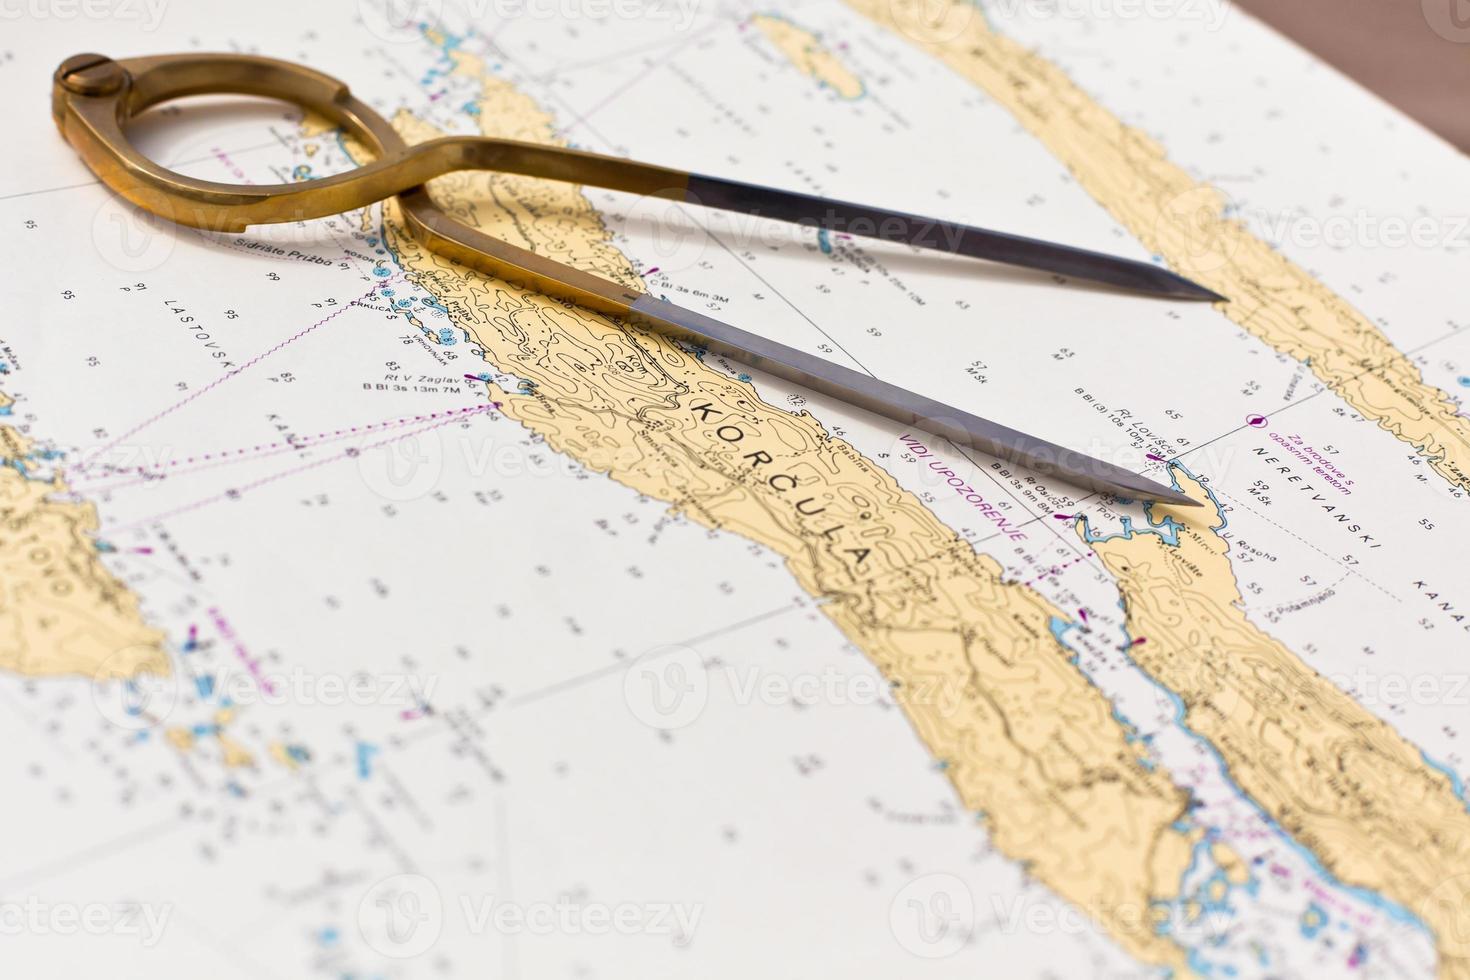 Paar Kompasse für die Navigation auf einer Seekarte foto